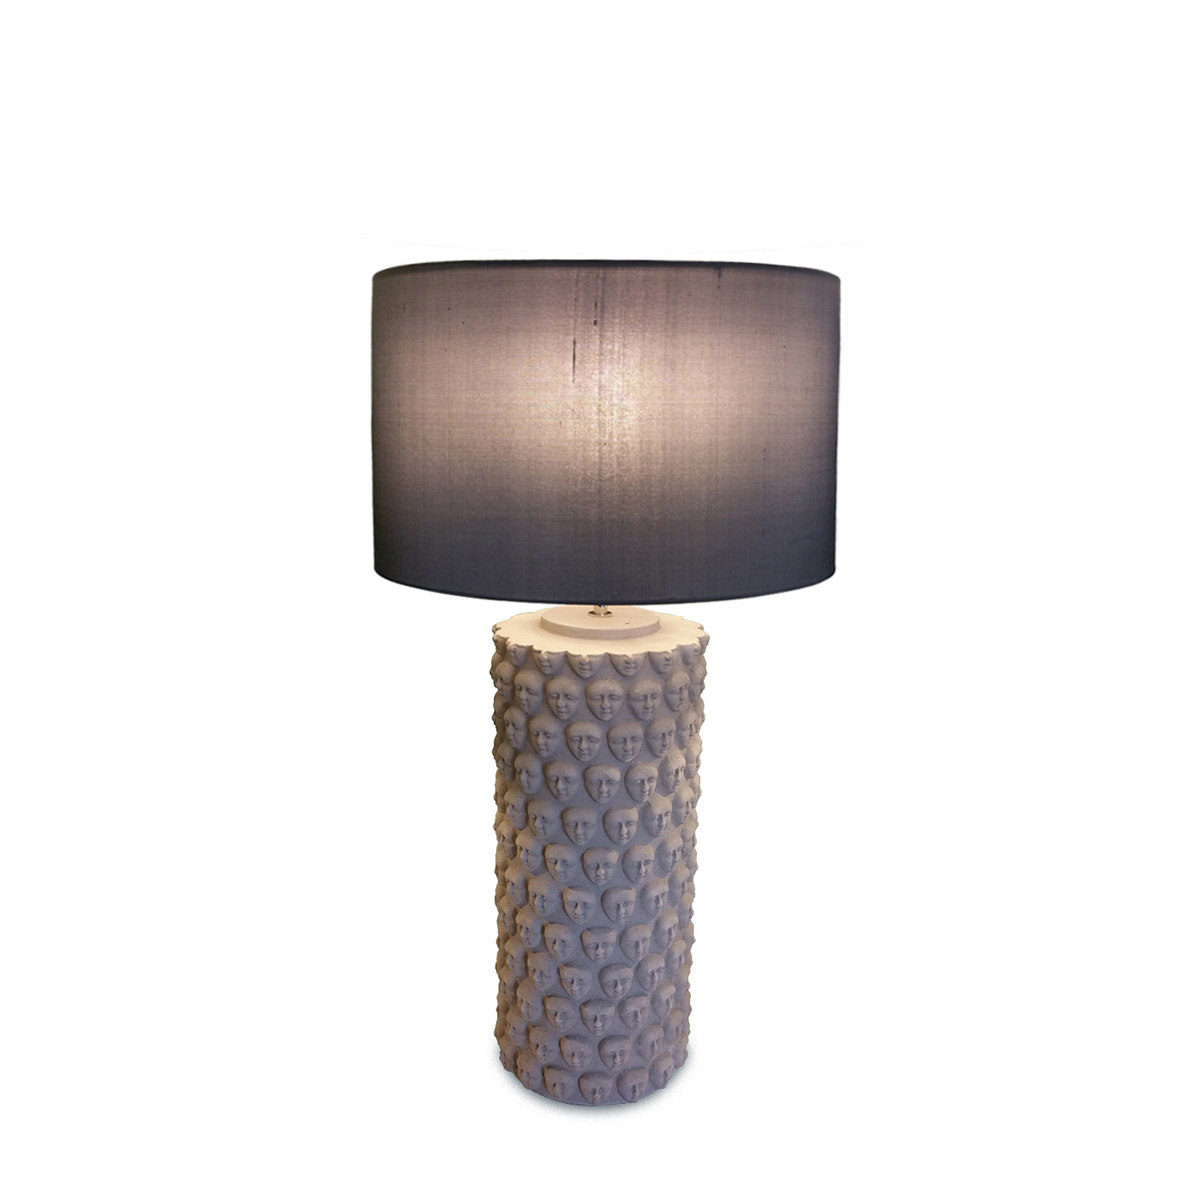 Επιτραπέζια κεραμική λάμπα FACES ceramic table lamp